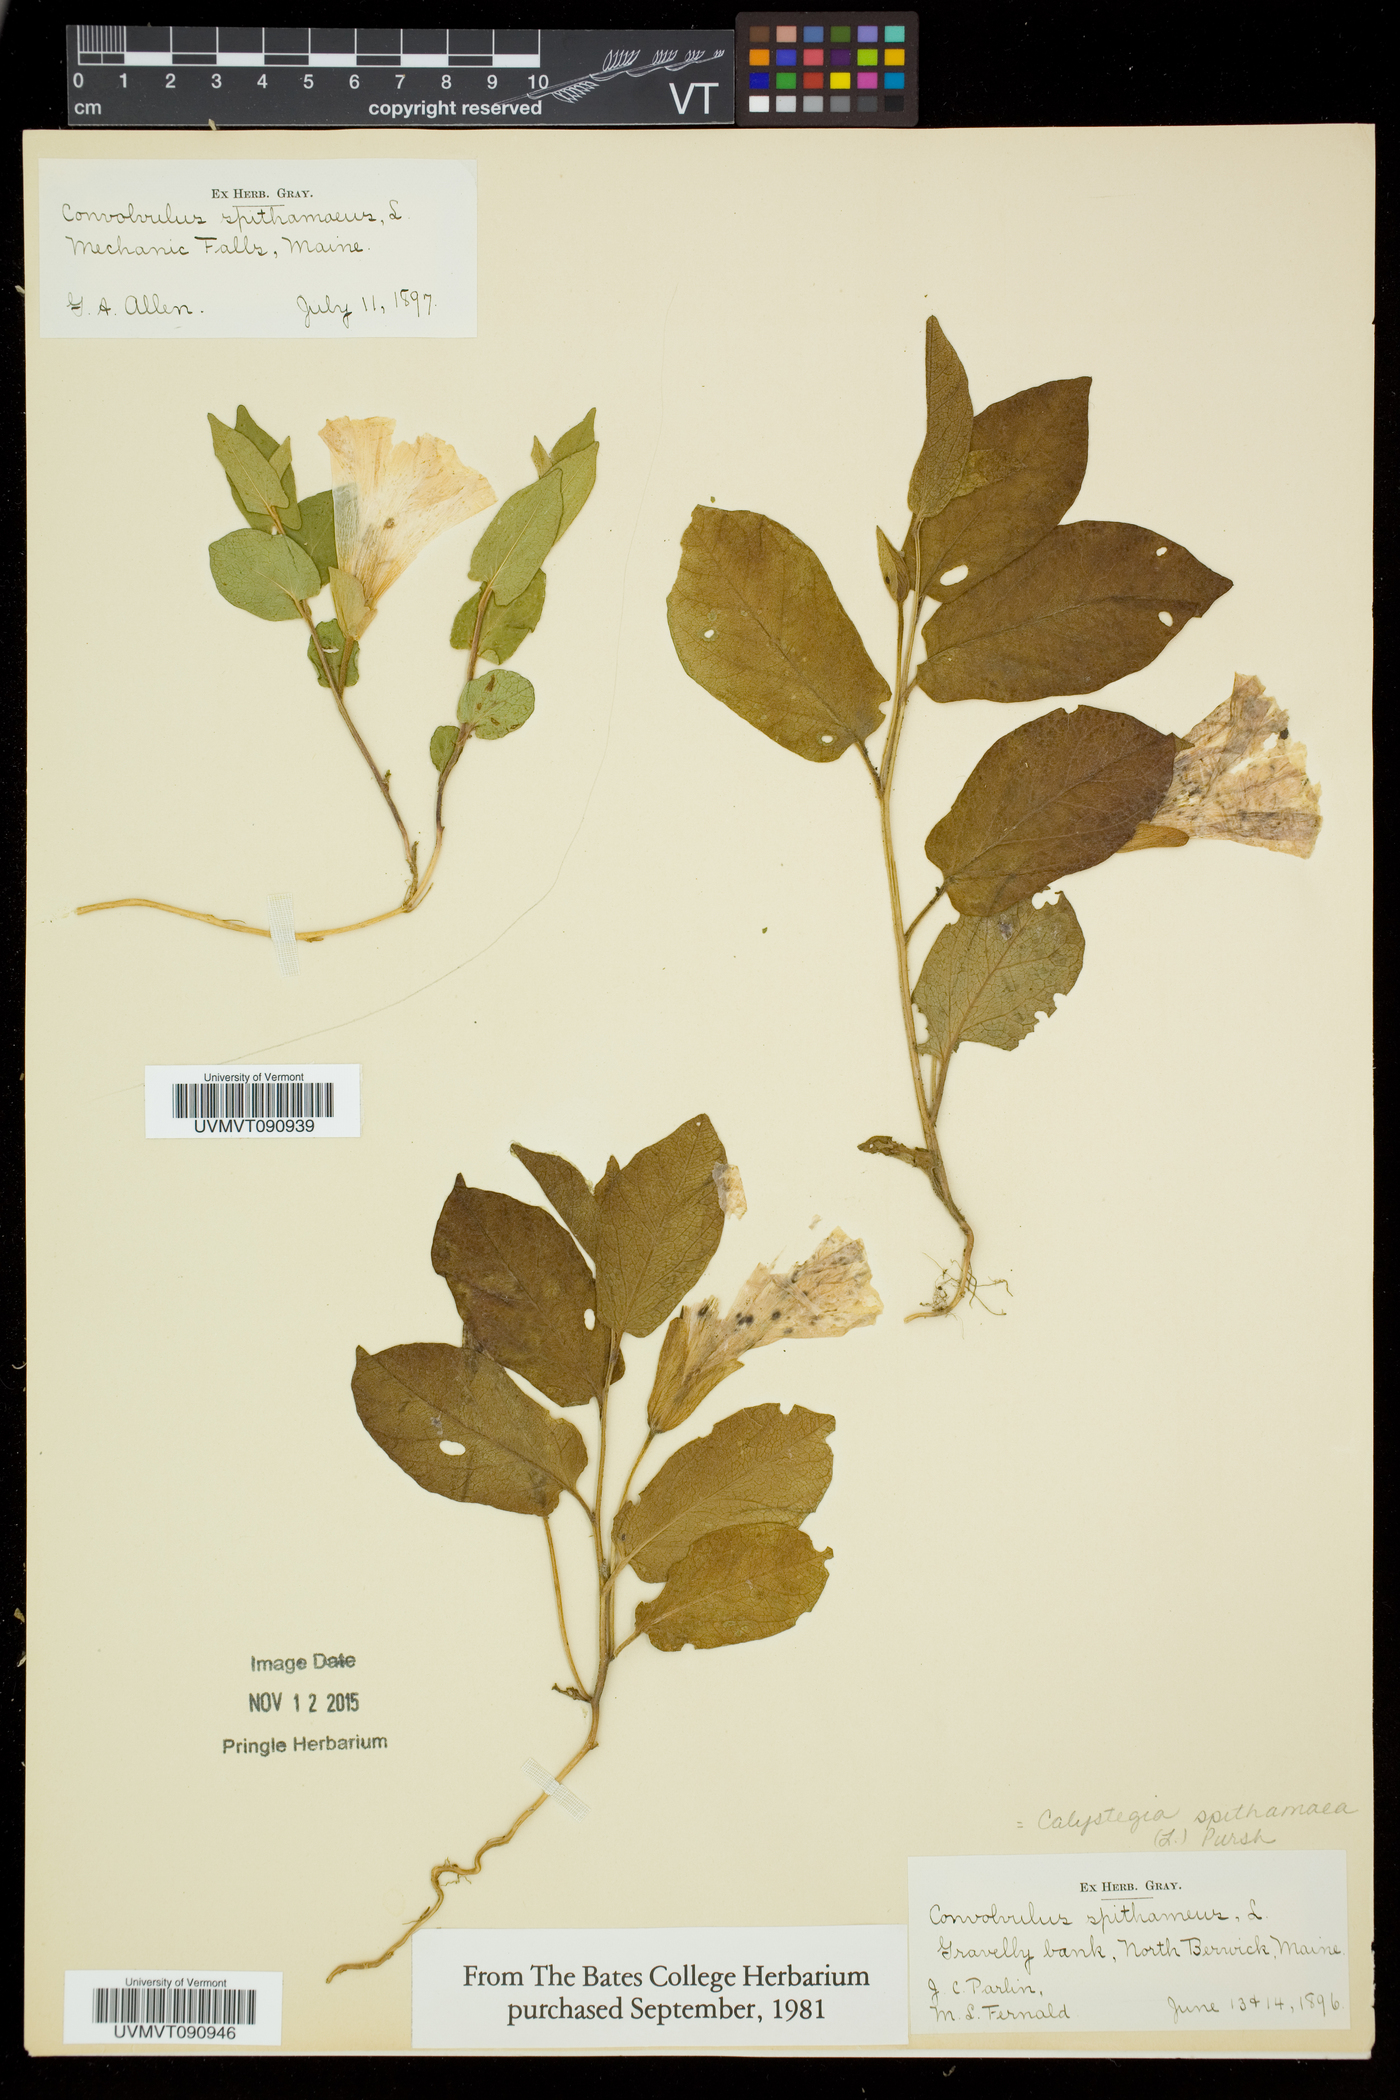 Calystegia spithamaea subsp. spithamaea image